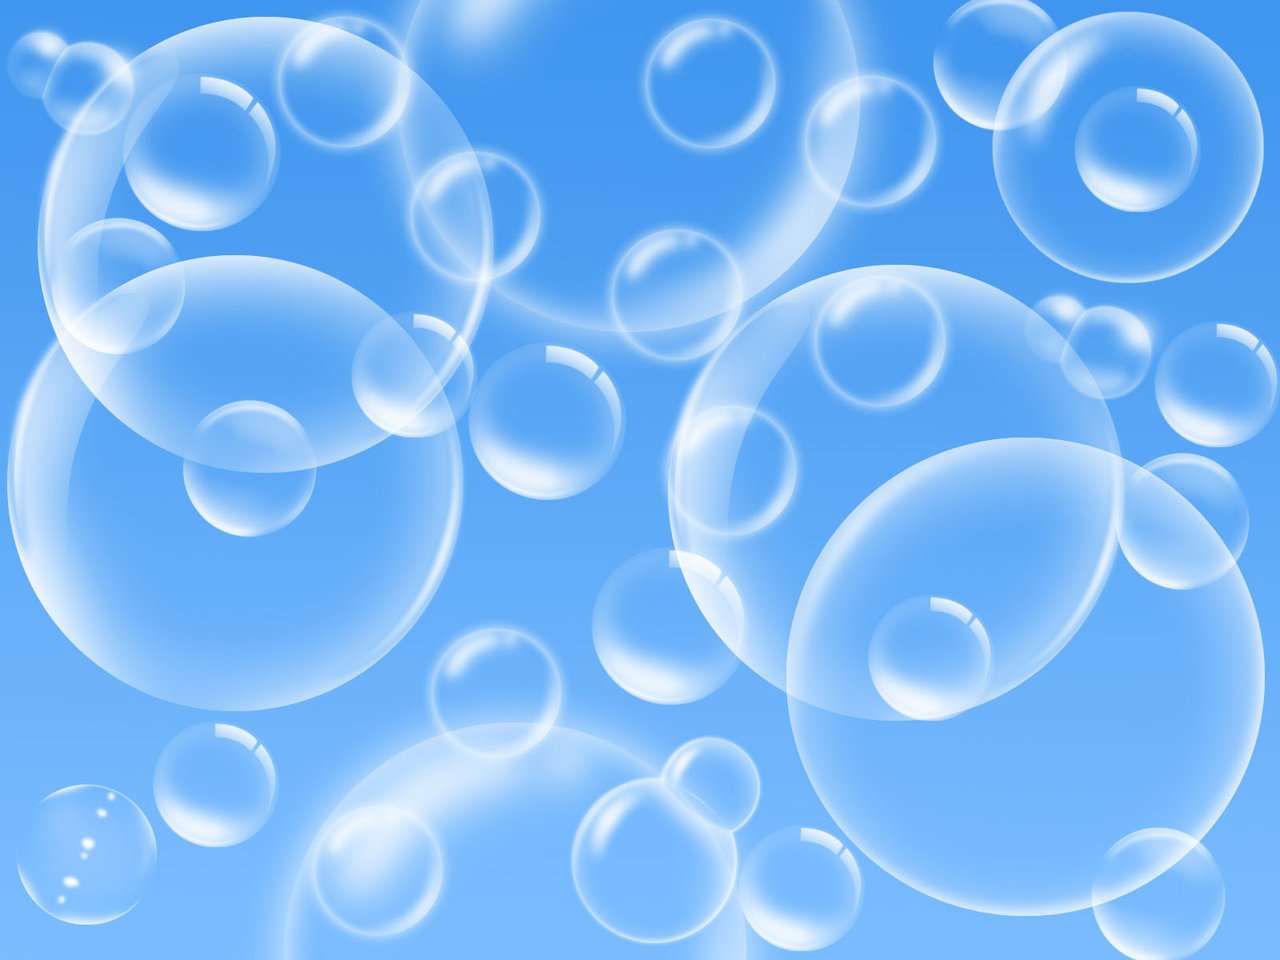 Bubbles by VistaDude